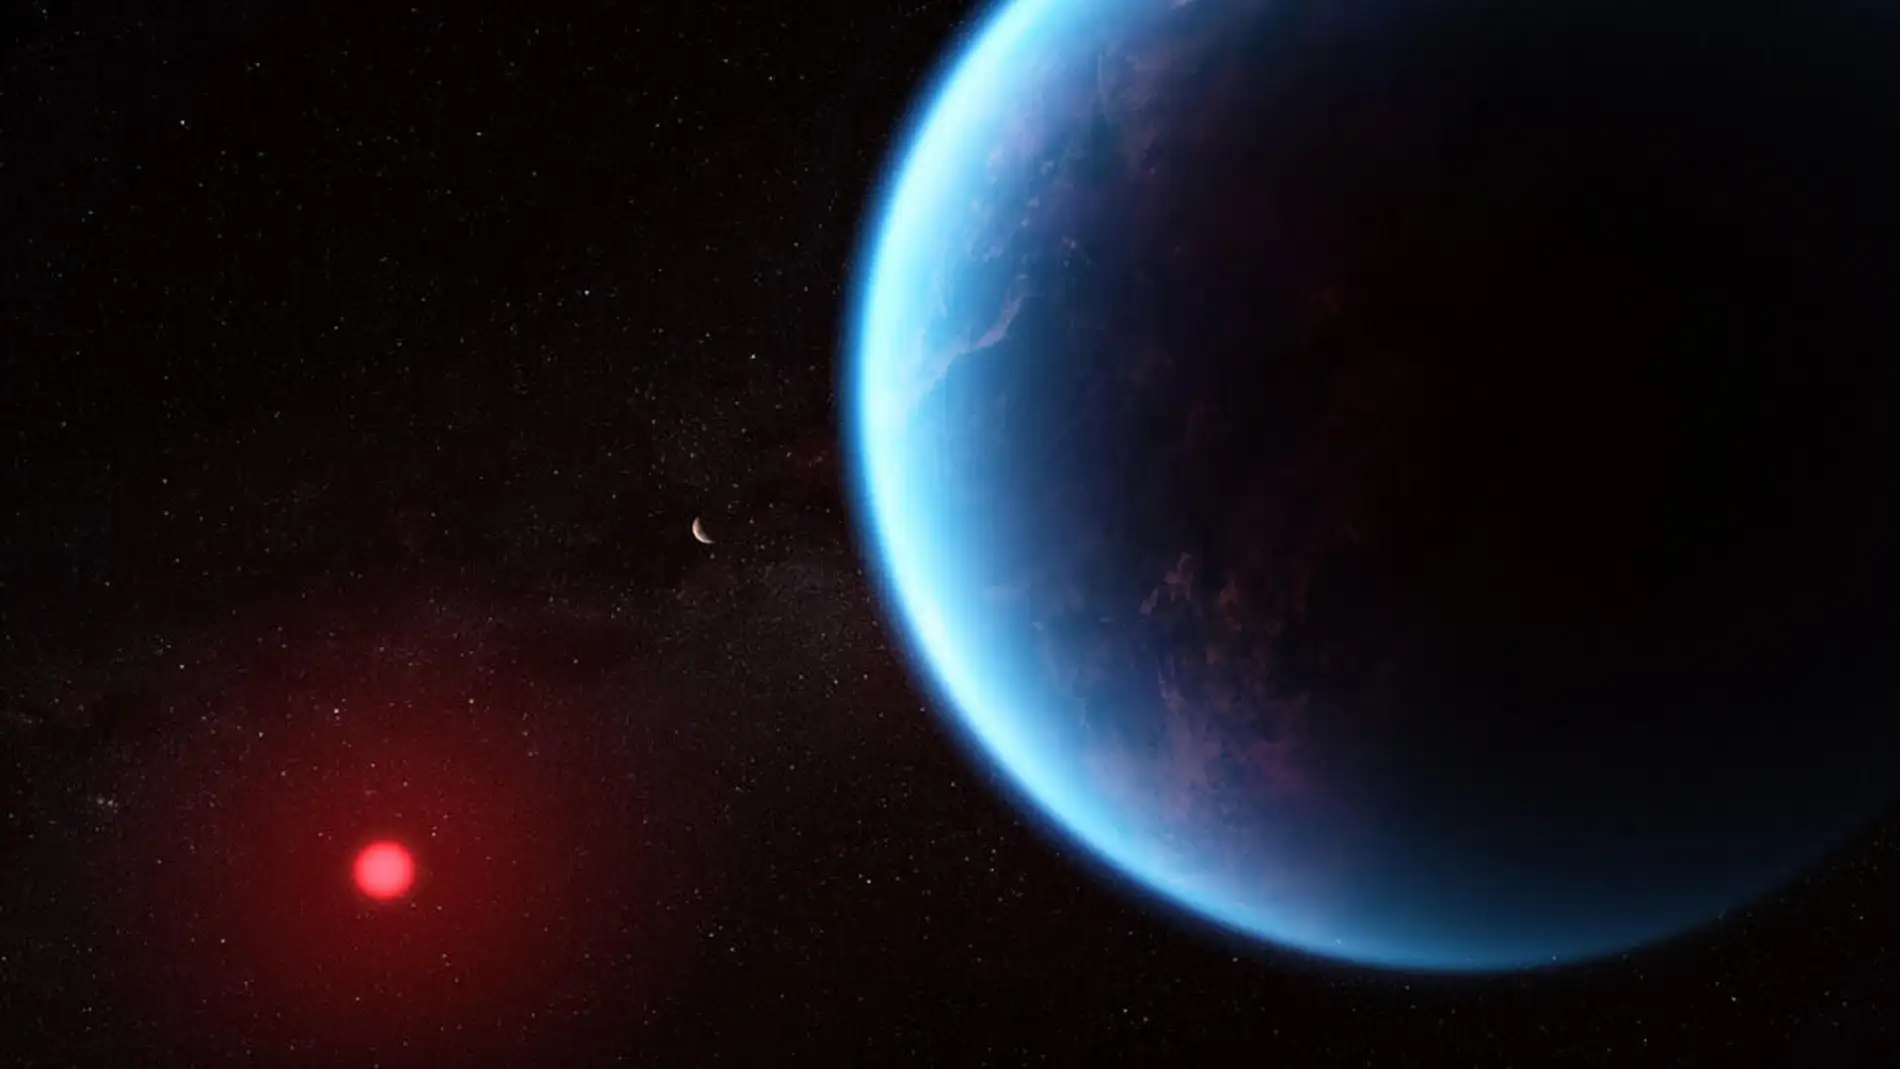 El telescopio James Webb descubre metano y dióxido de carbono en la atmósfera del exoplaneta K2-18 b